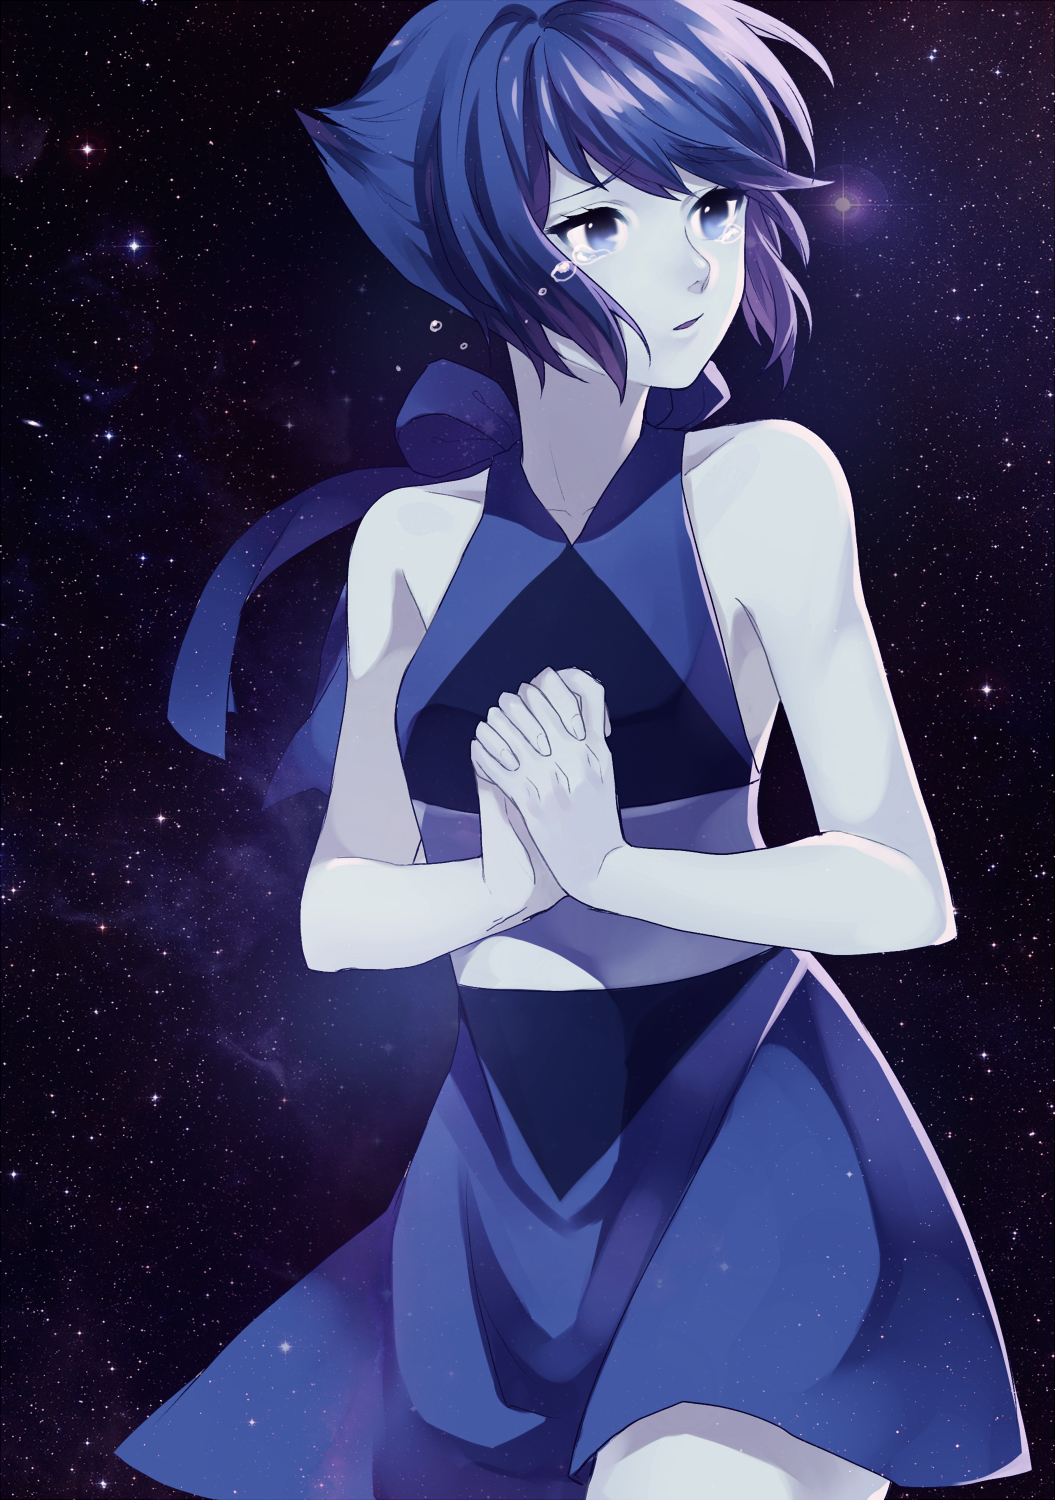 Lapis Lazuli Steven Universe Anime - 1055x1500 Wallpaper 